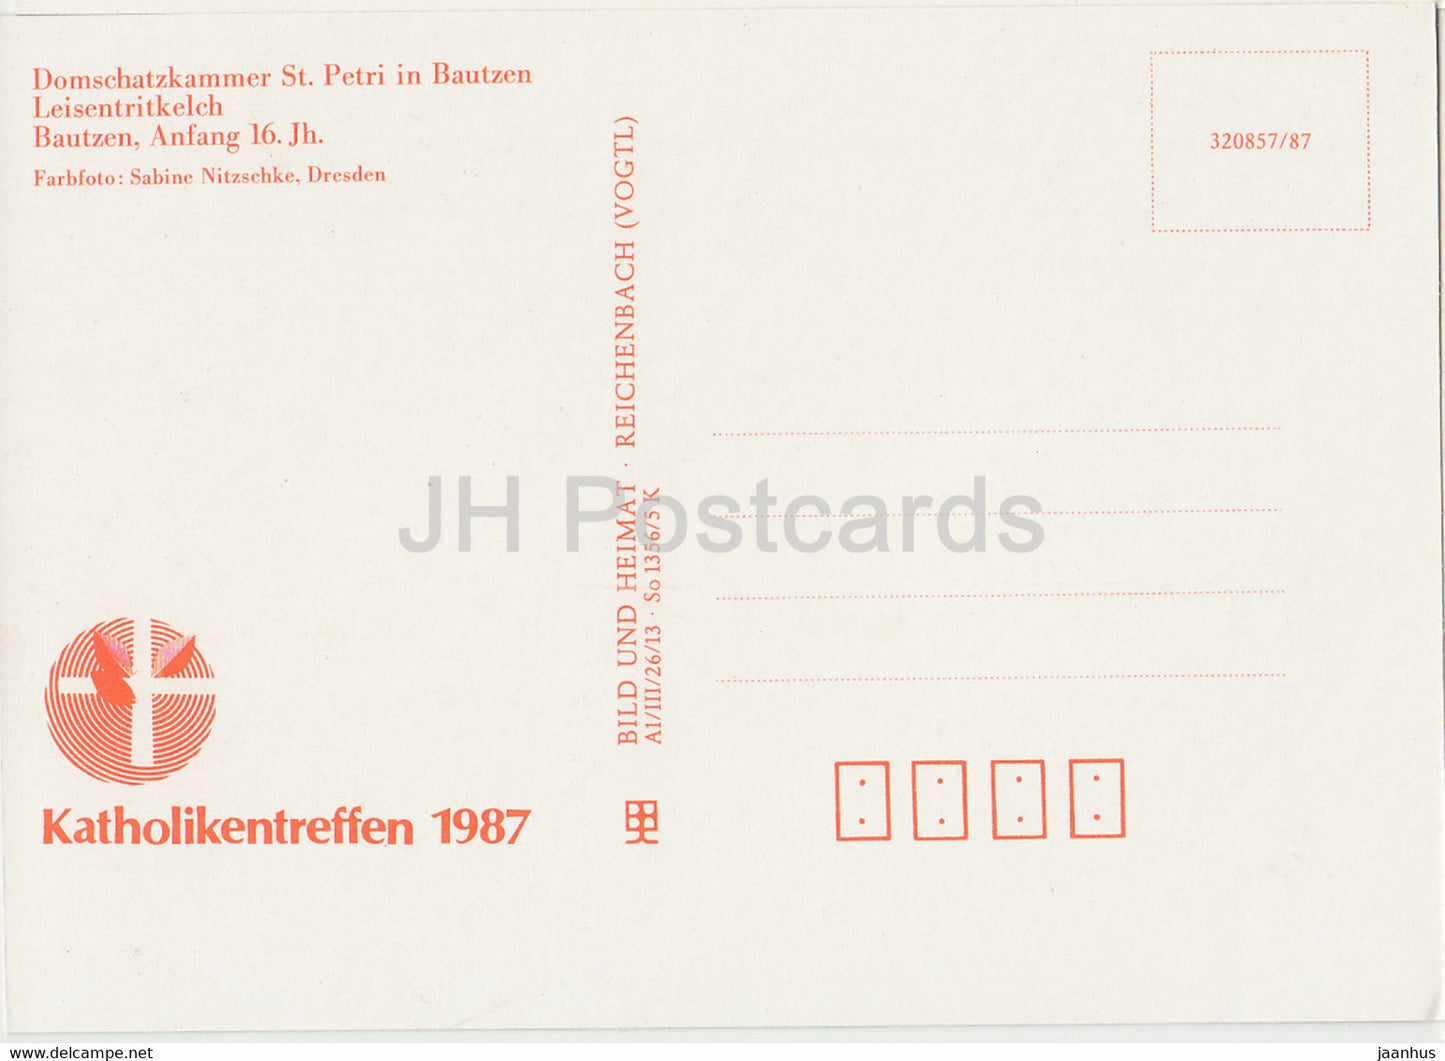 Leisentritkelch - Kelch - Domschatzkammer St. Petri in Bautzen - 1987 - DDR Deutschland - unbenutzt